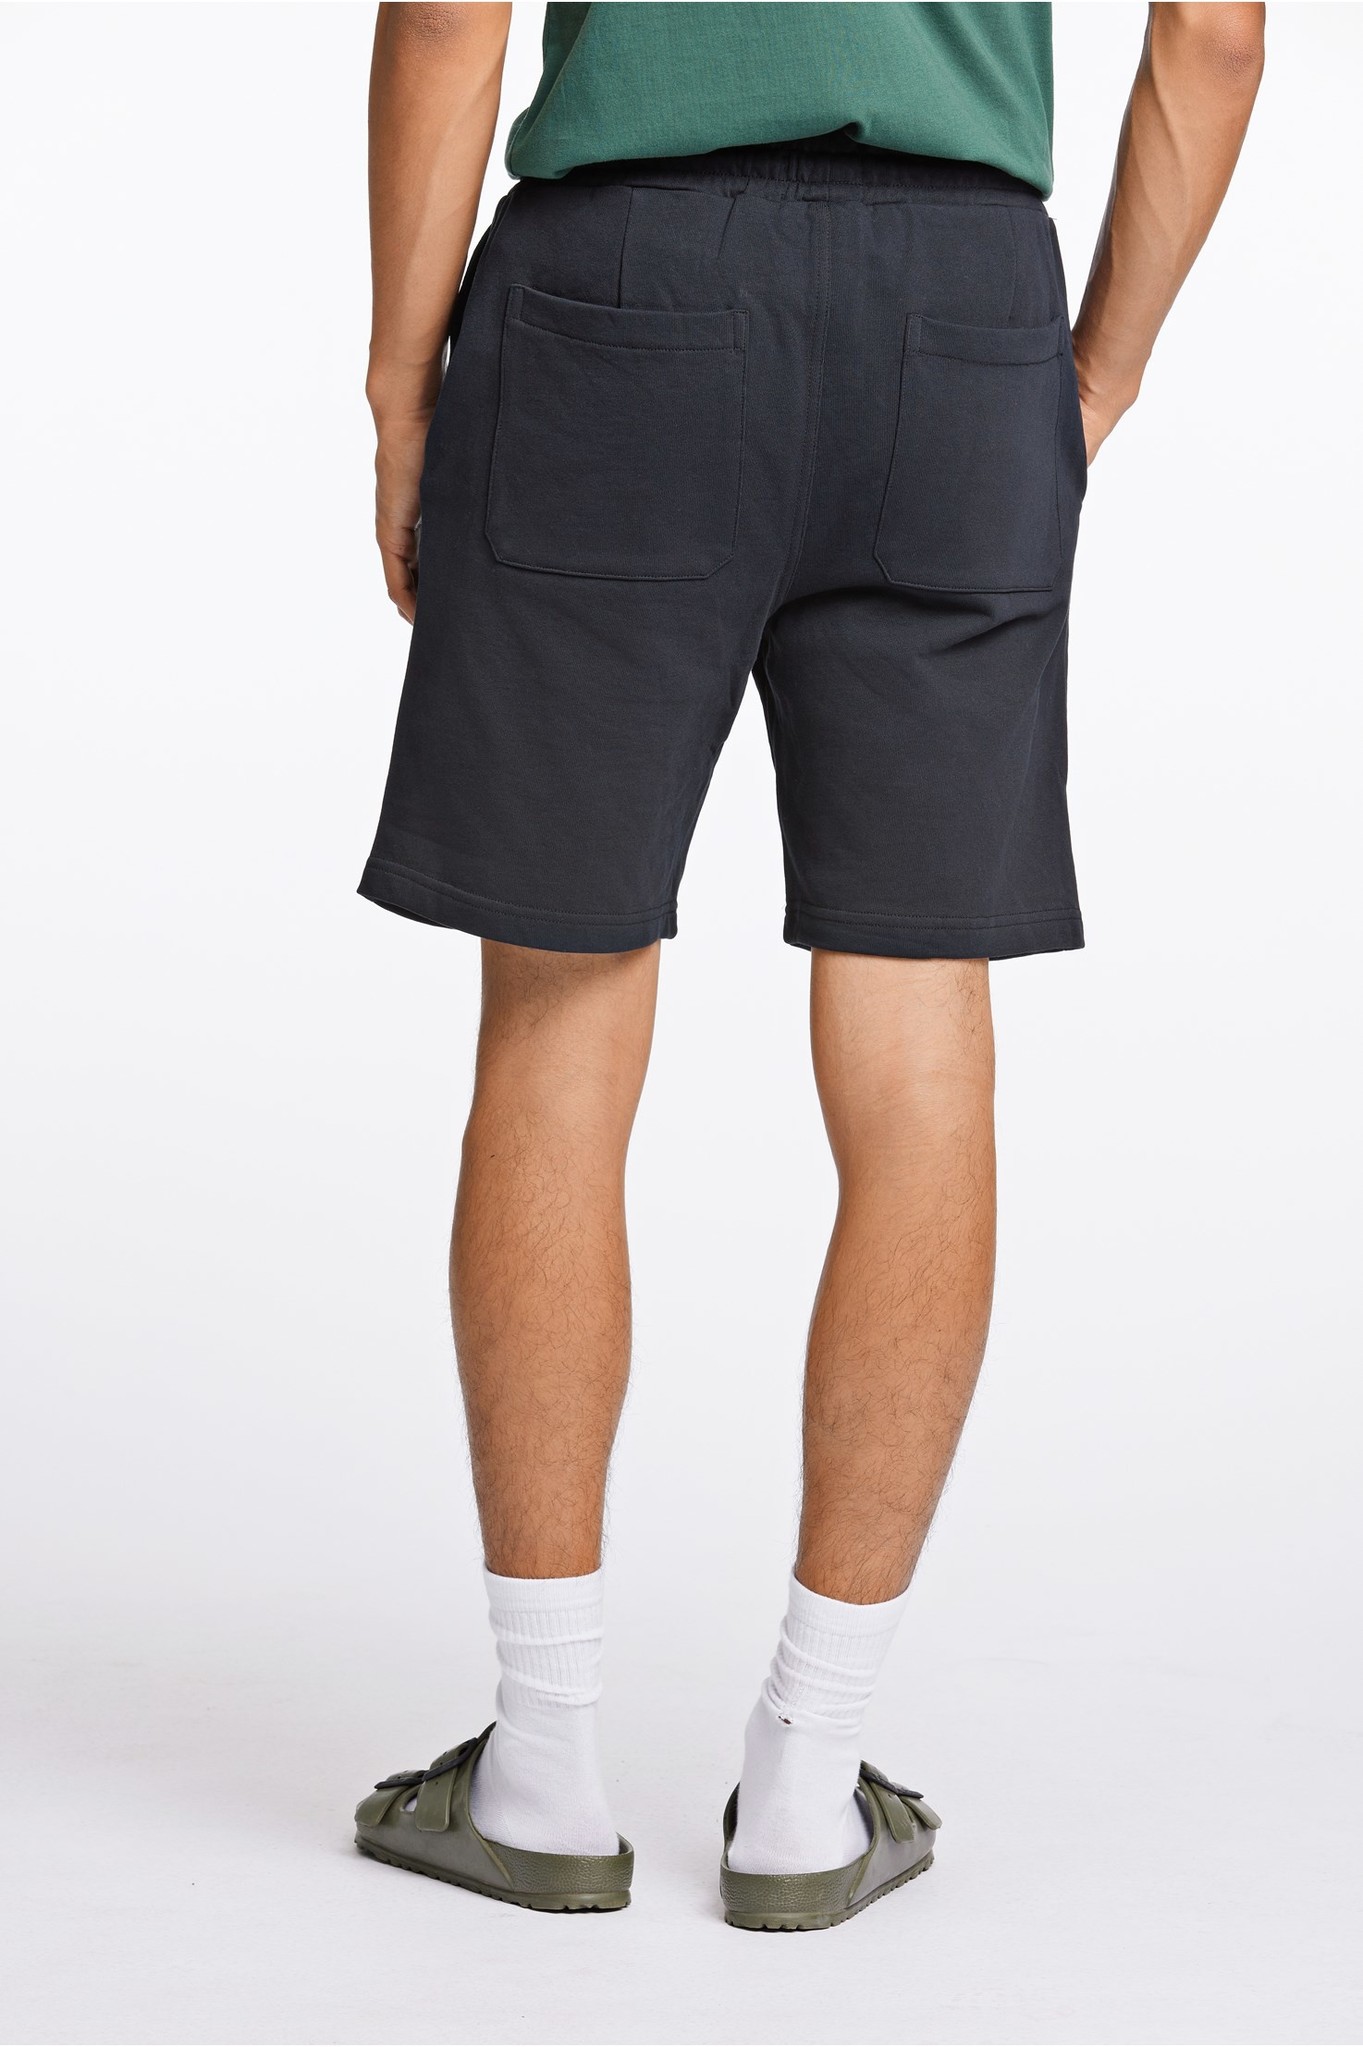 Sweat Shorts Style: 60-532002US - LINDBERGH